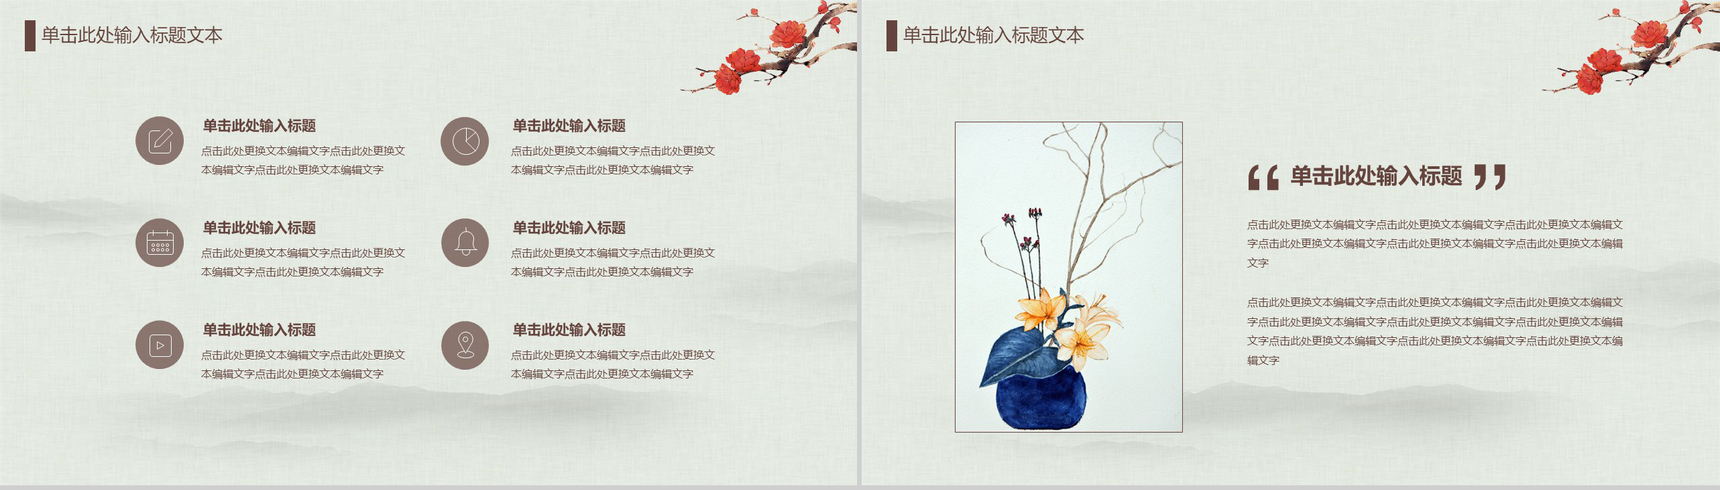 中国传统文化宫廷风传统文化PPT模板-7